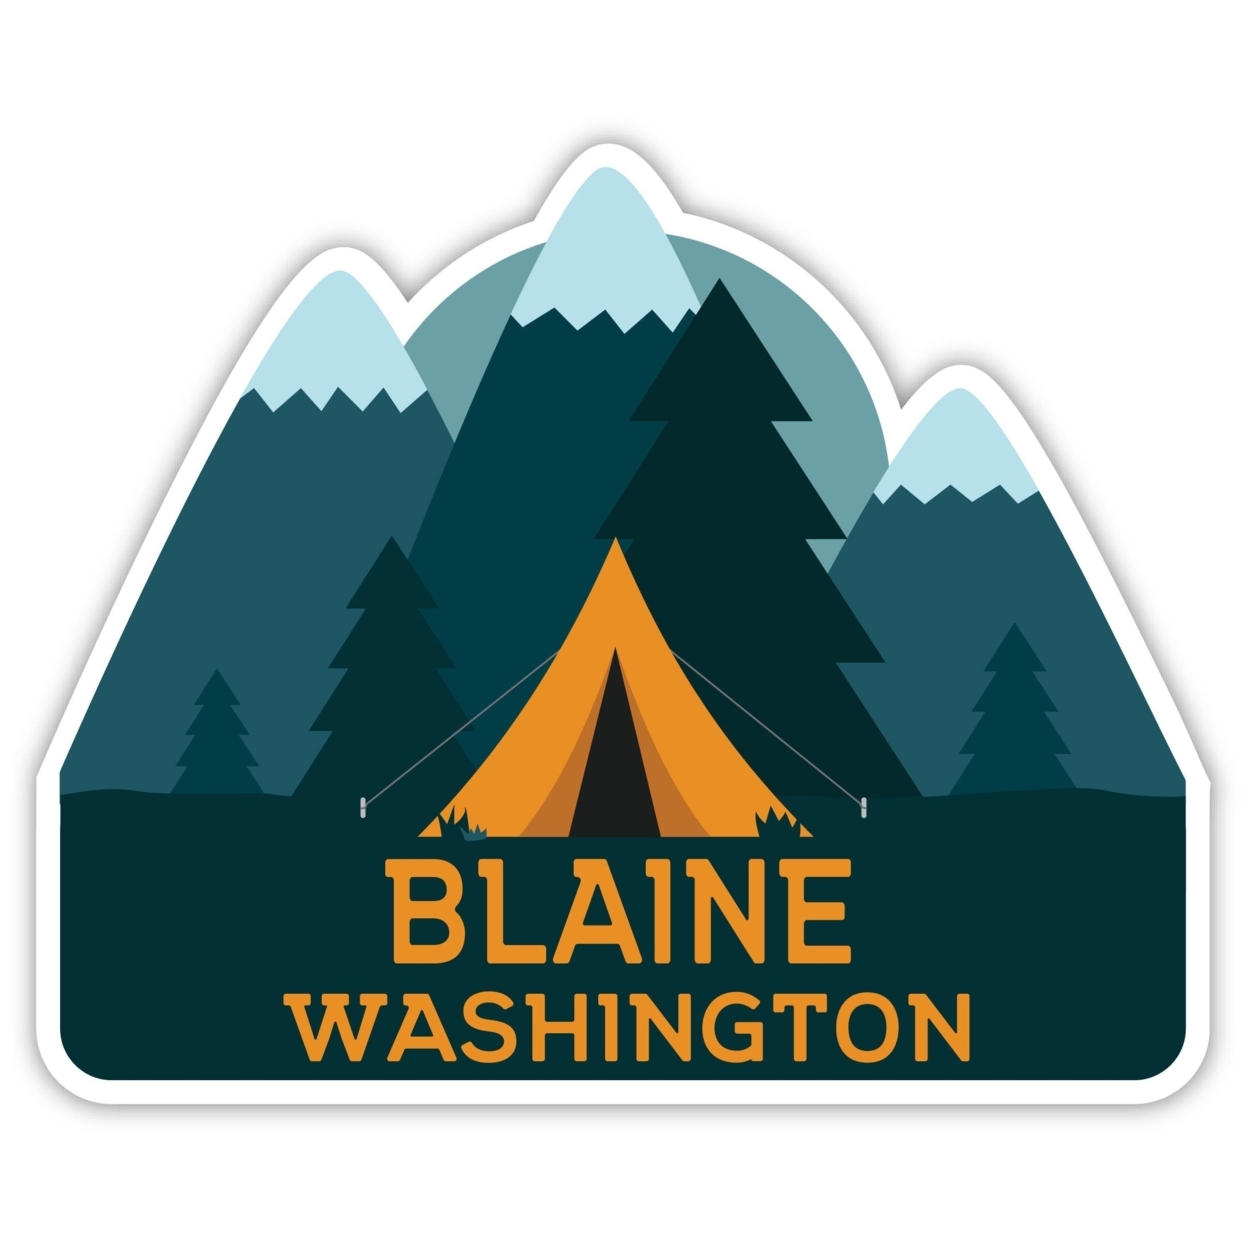 Blaine Washington Souvenir Decorative Stickers (Choose Theme And Size) - Single Unit, 10-Inch, Tent